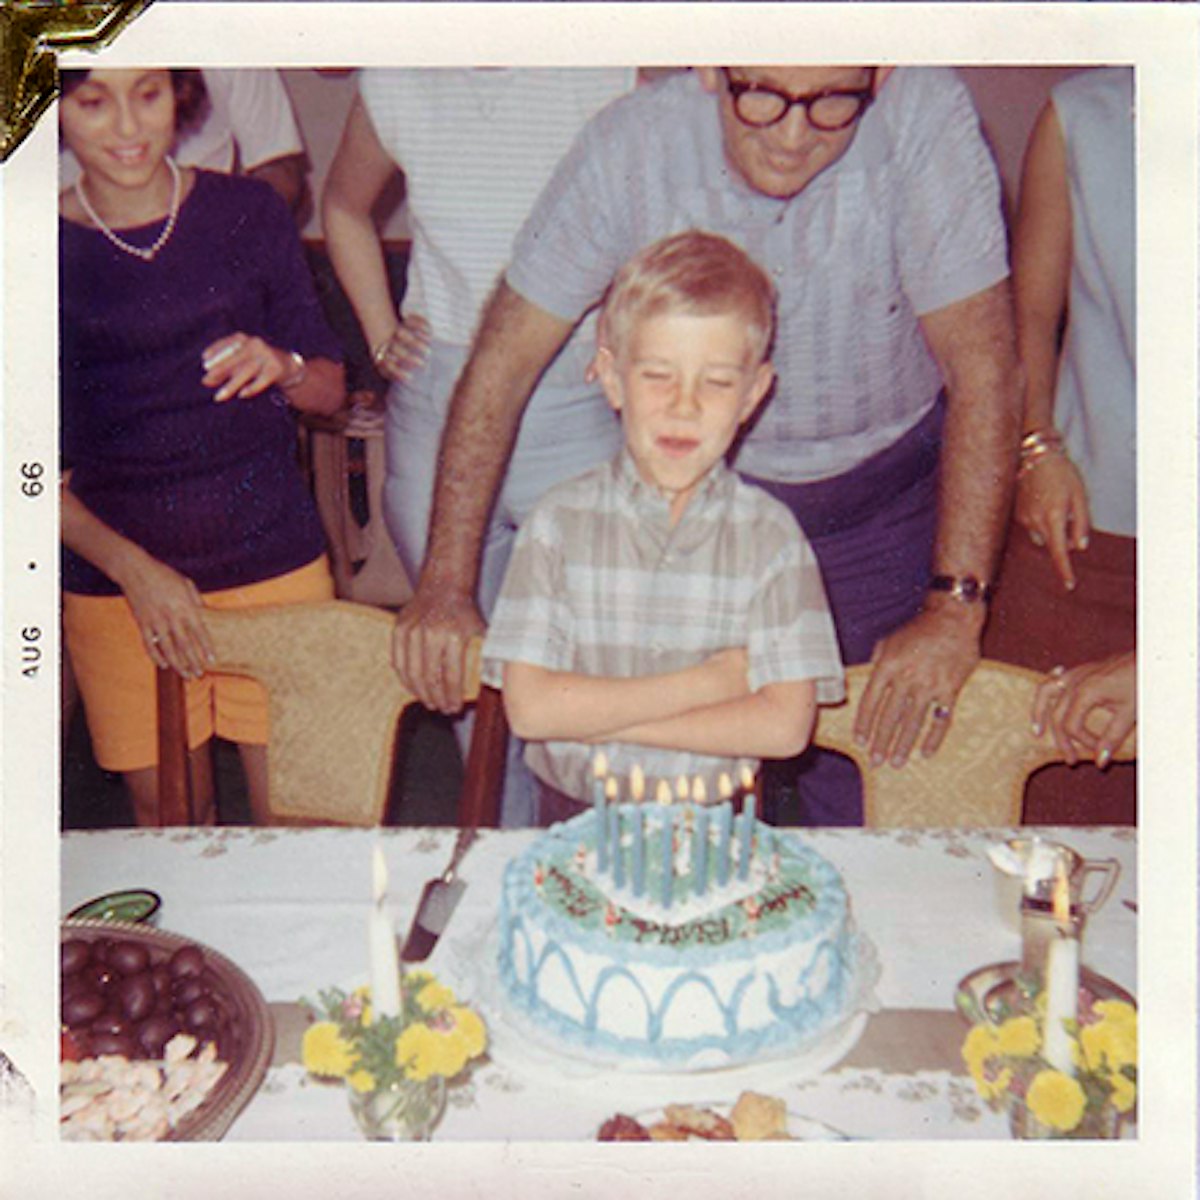 کورس تولد 8 سالگی خود را با عمه و عمویش در زادگاه خود در مریک ، نیویورک جشن می گیرد.